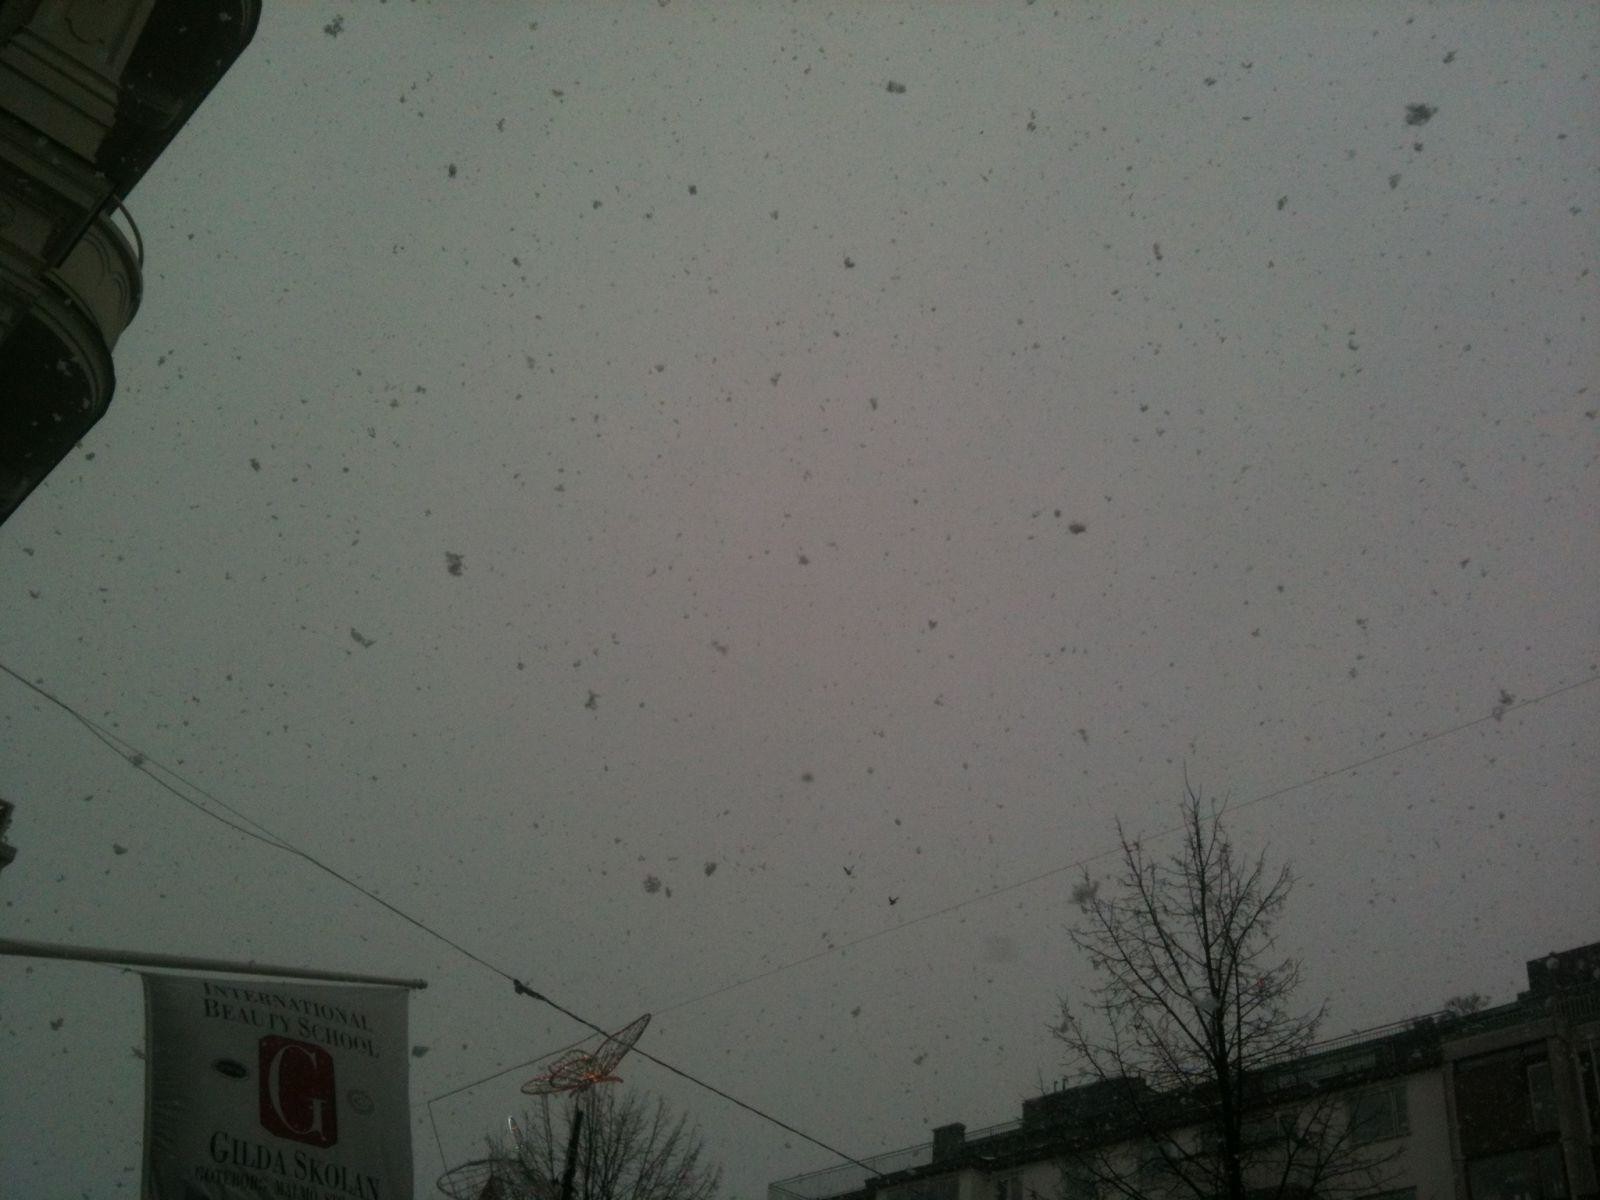 Gothenburg large snowflakes